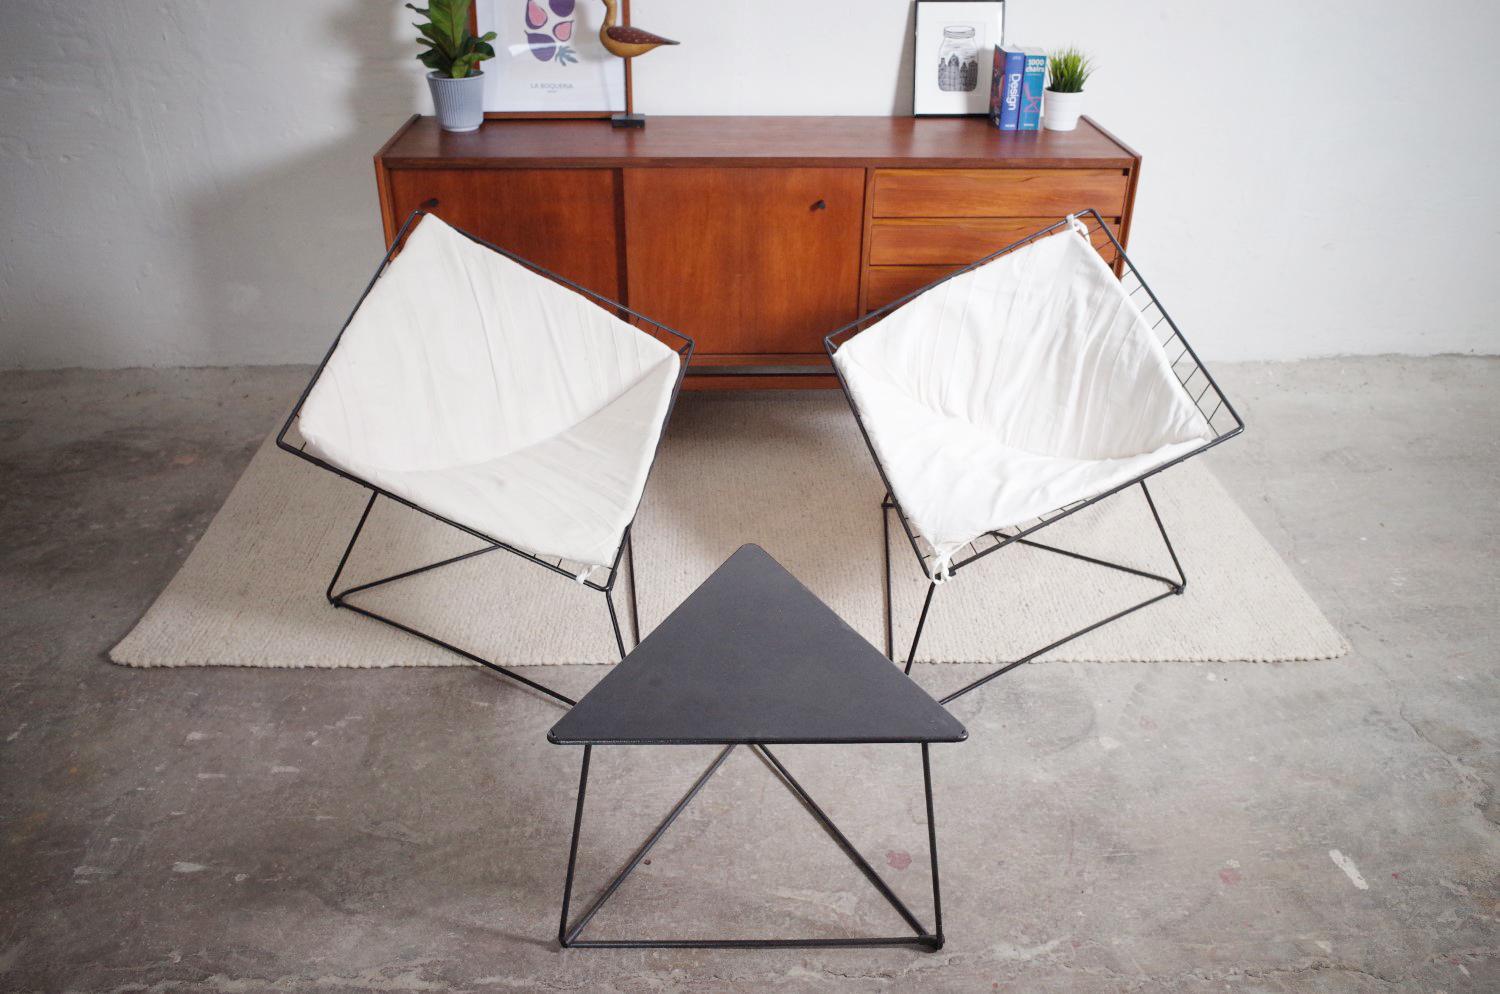 Ein sehr schönes und seltenes Set Oti von Ikea aus den 80er Jahren. Es Besteht aus 2 Sesseln und dem seltenen Original Tisch. Die Sesseln sind dem klassischen Diamond Chair nachempfunden. Das Gestell ist dreieckig, die Sitzschale ist trapezförmig.